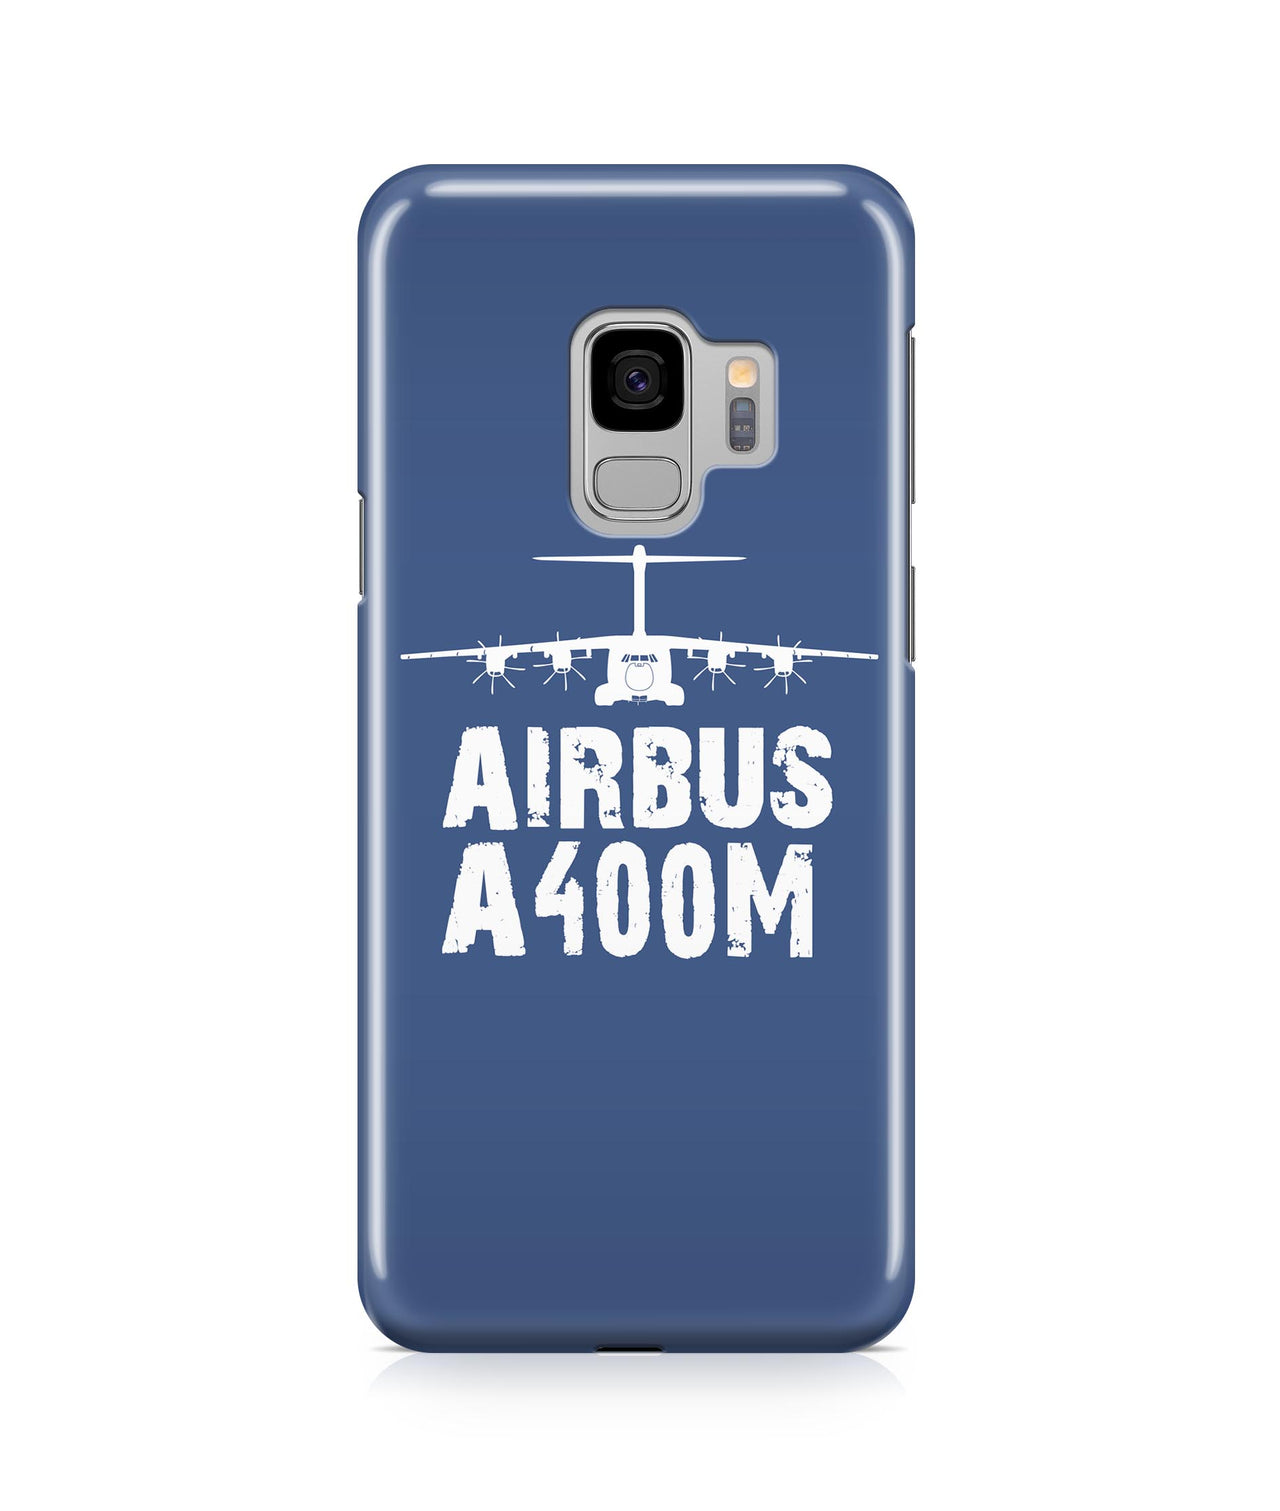 Airbus A400M Plane & Designed Samsung J Cases